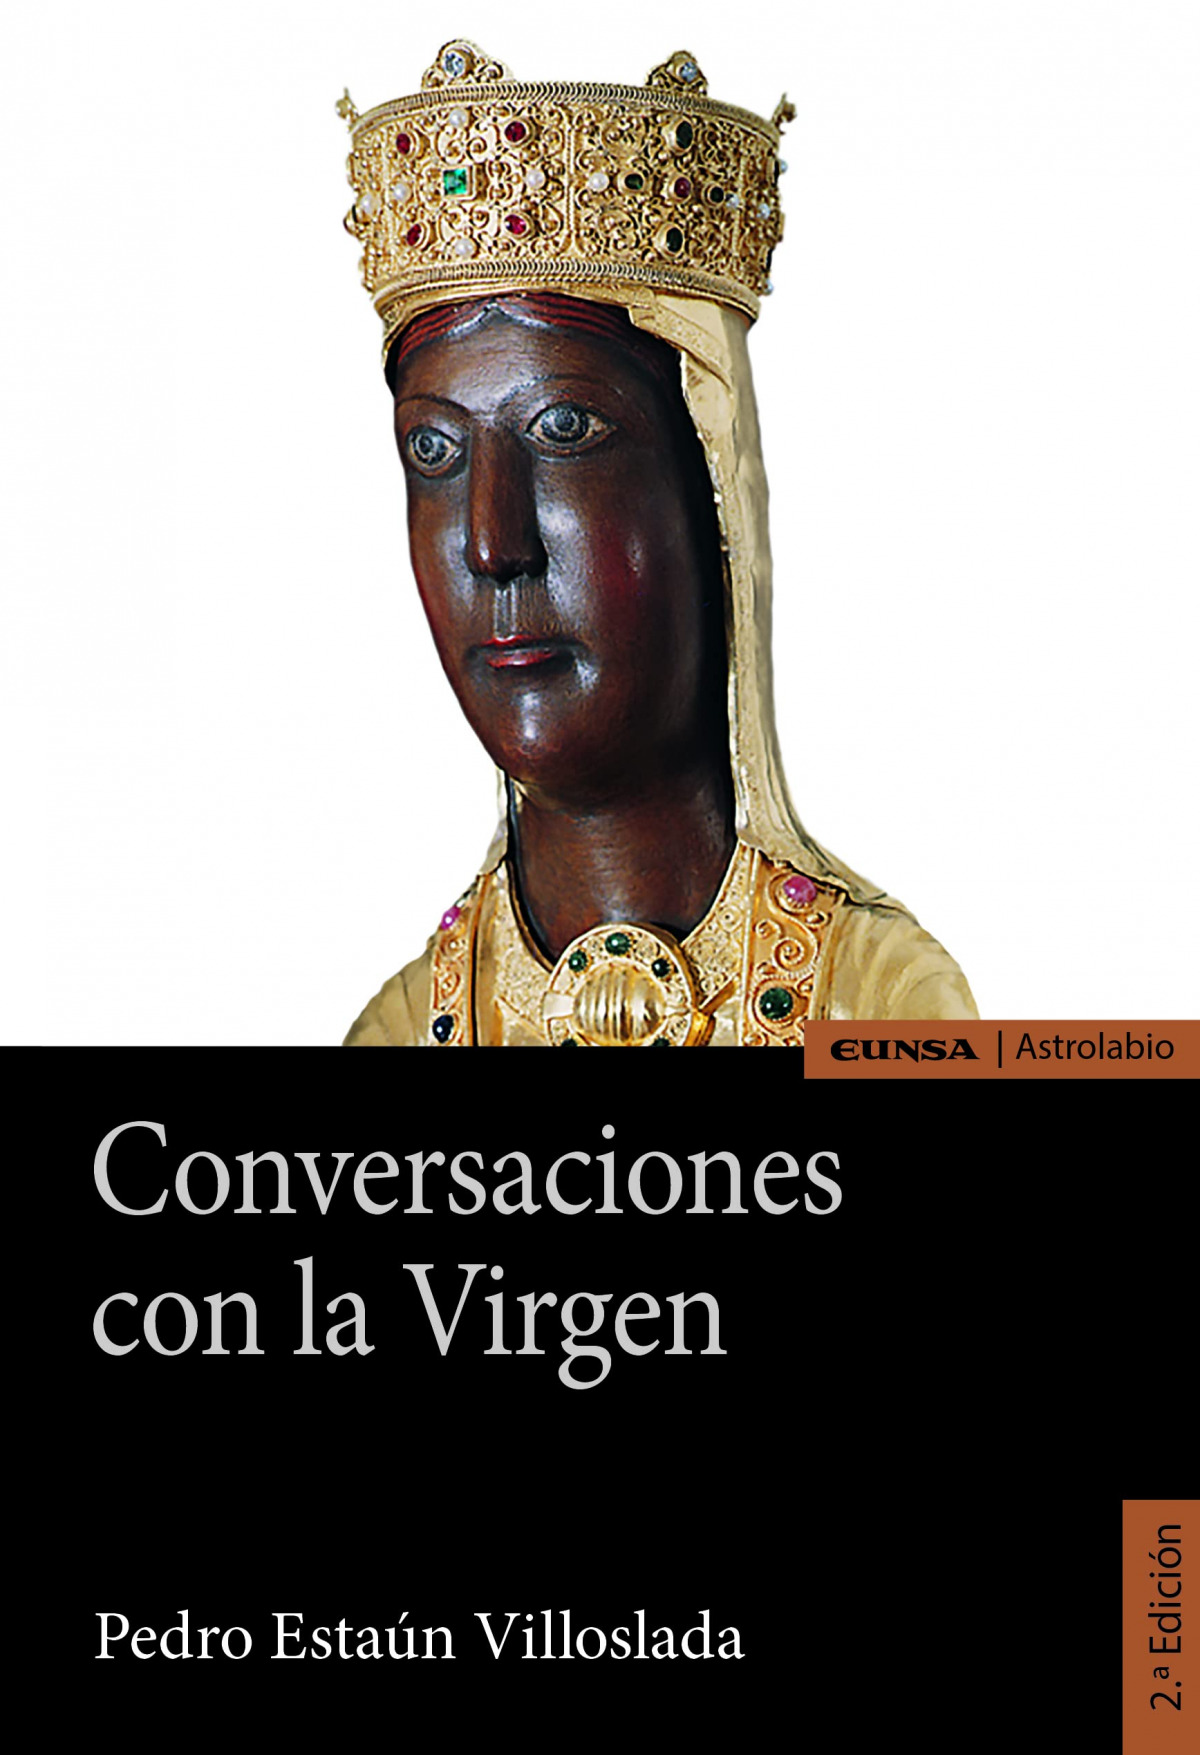 Conversaciones con la virgen - Pedro Estaun Villoslada